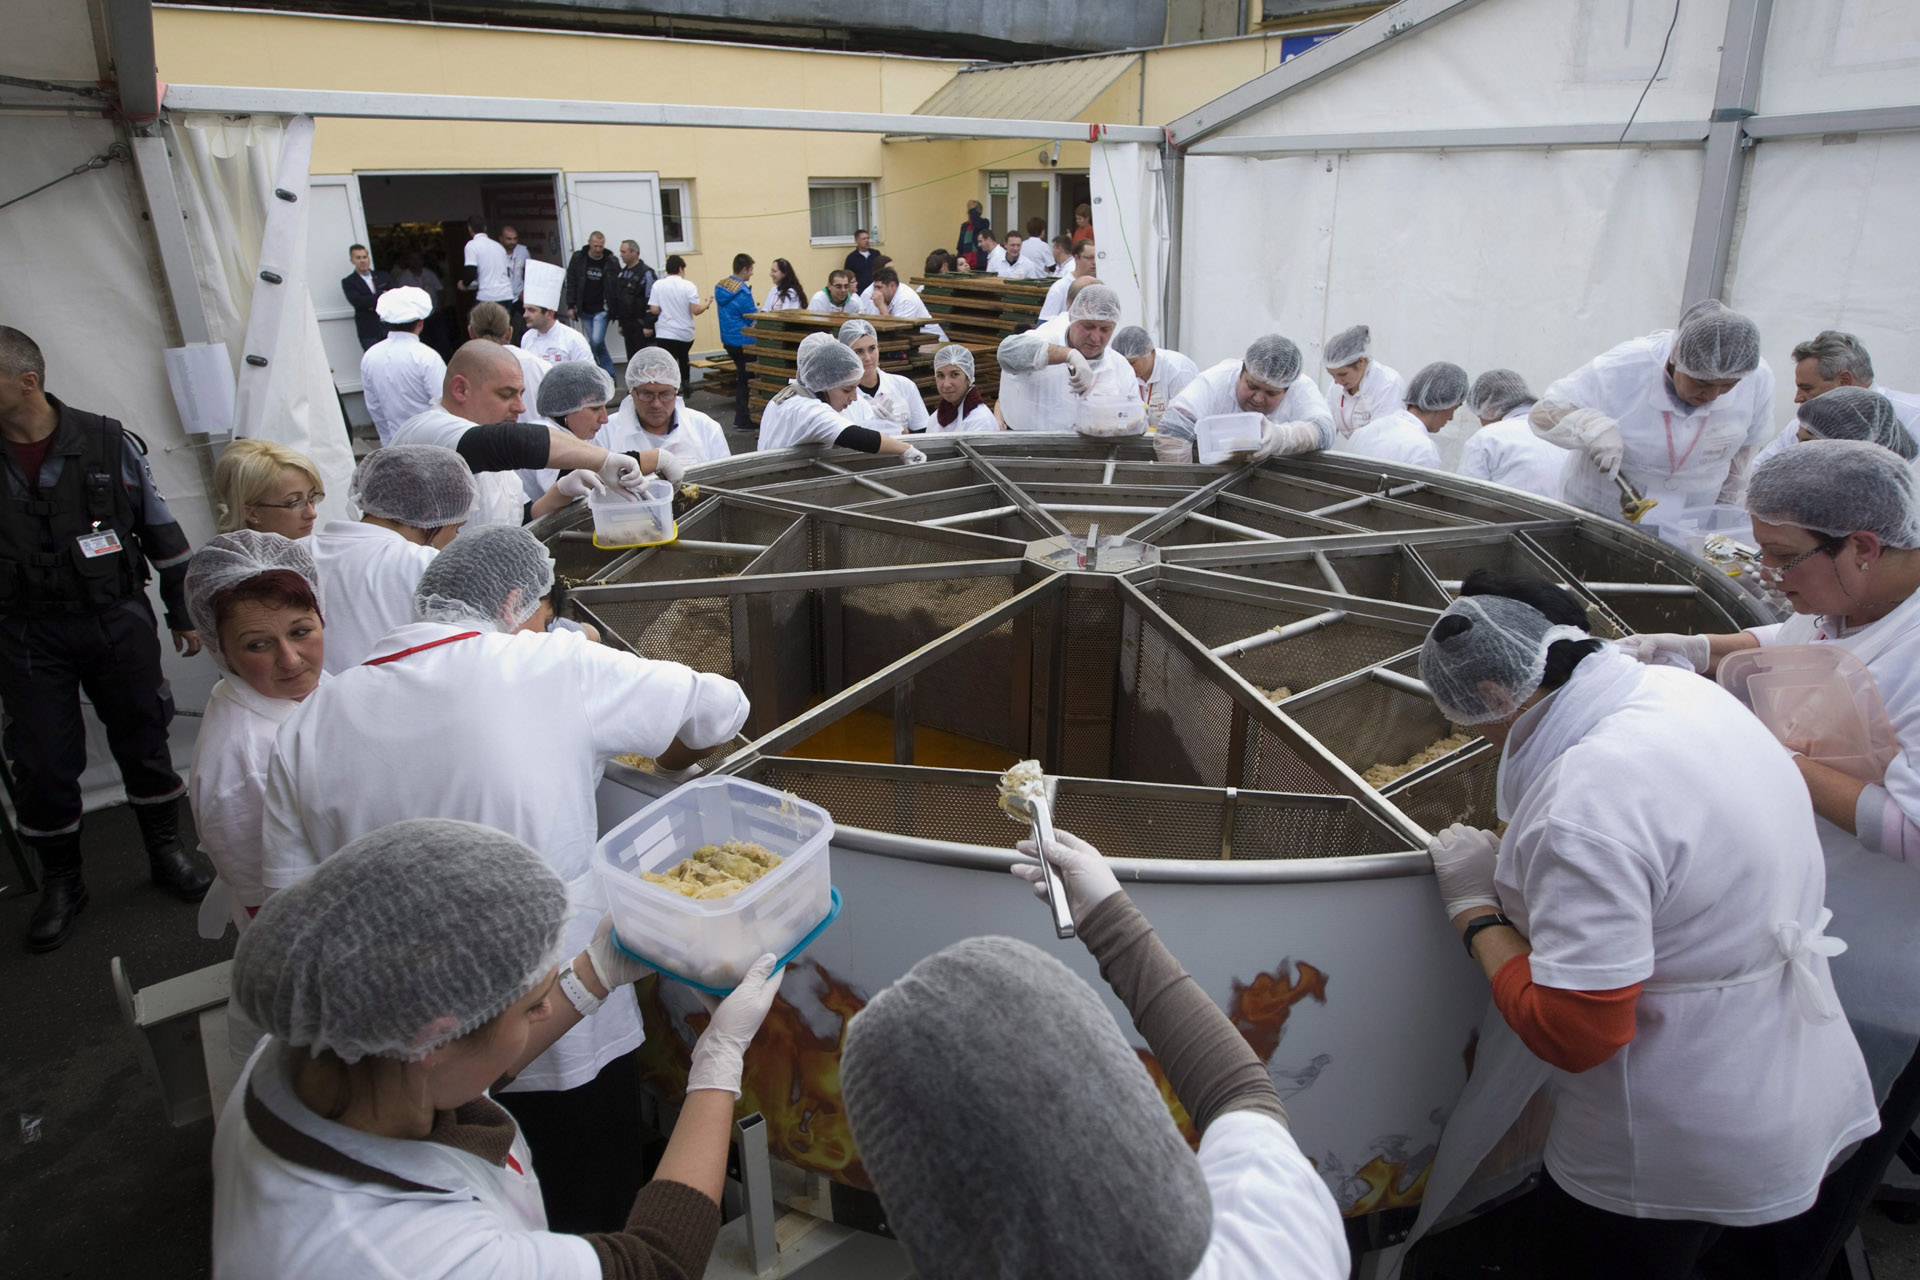 Rekordtöltöttkáposzta Erdélyben, 27104 tölteléket főztek egyszerre